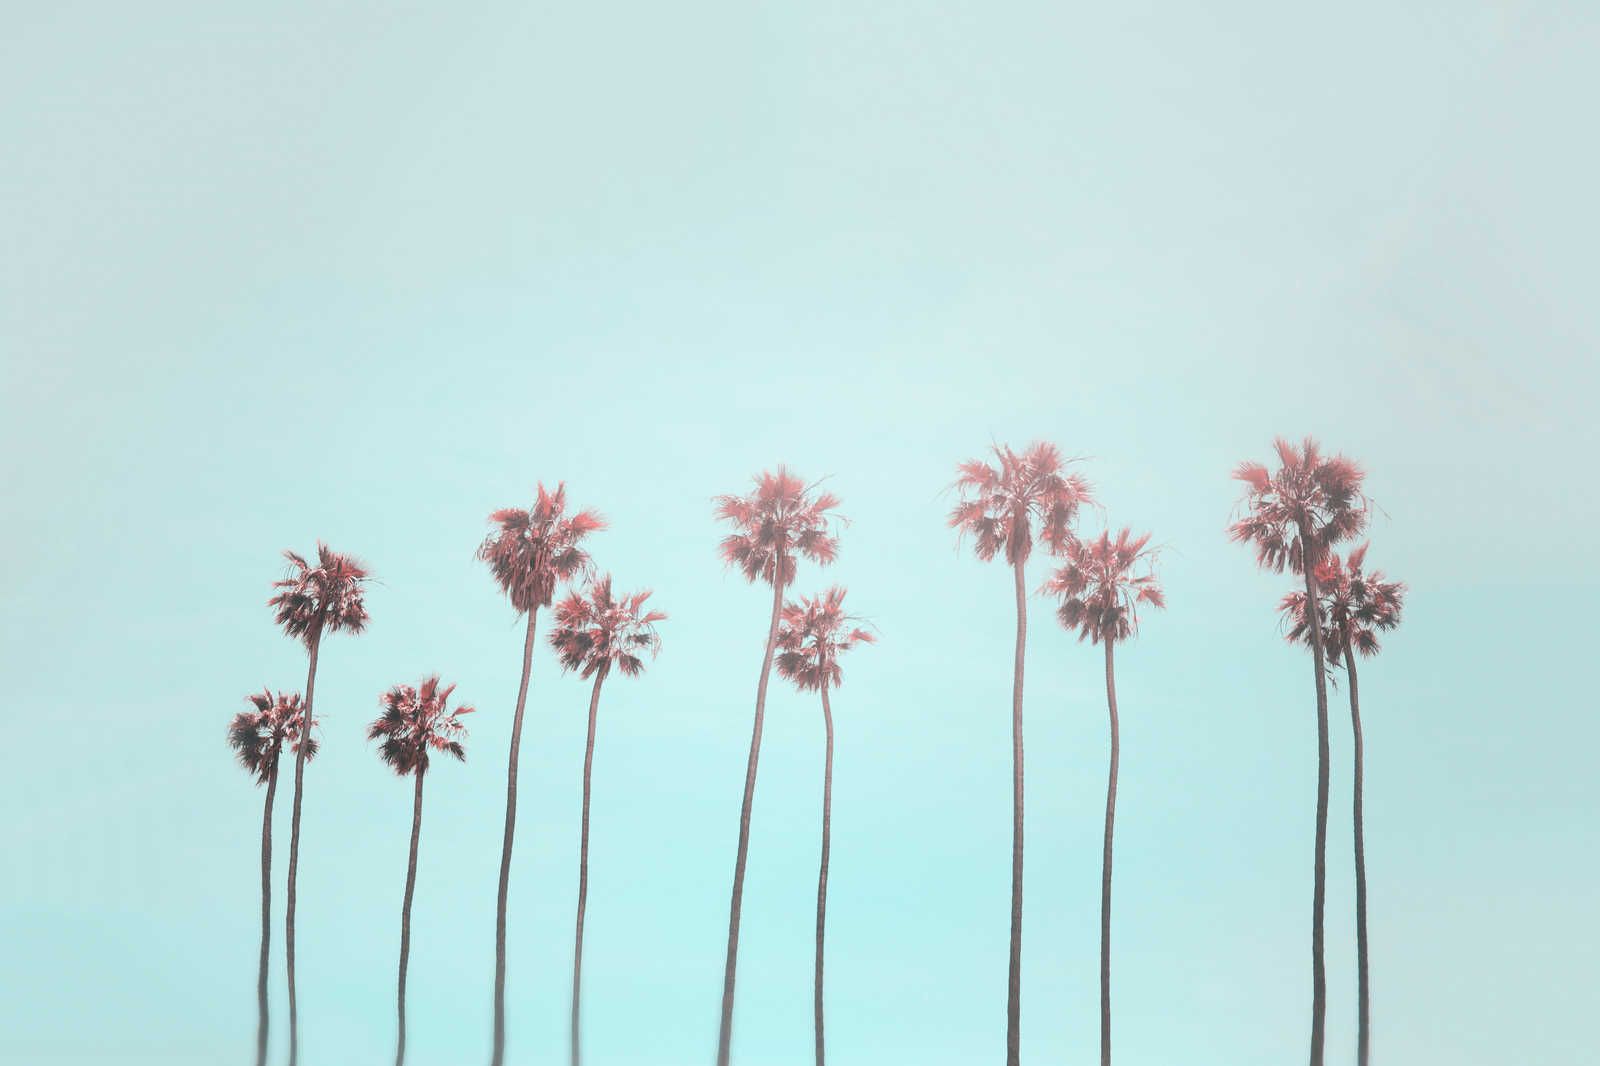             Tableau toile Palmiers & ciel pour une ambiance de plage en turquoise & rose - 0,90 m x 0,60 m
        